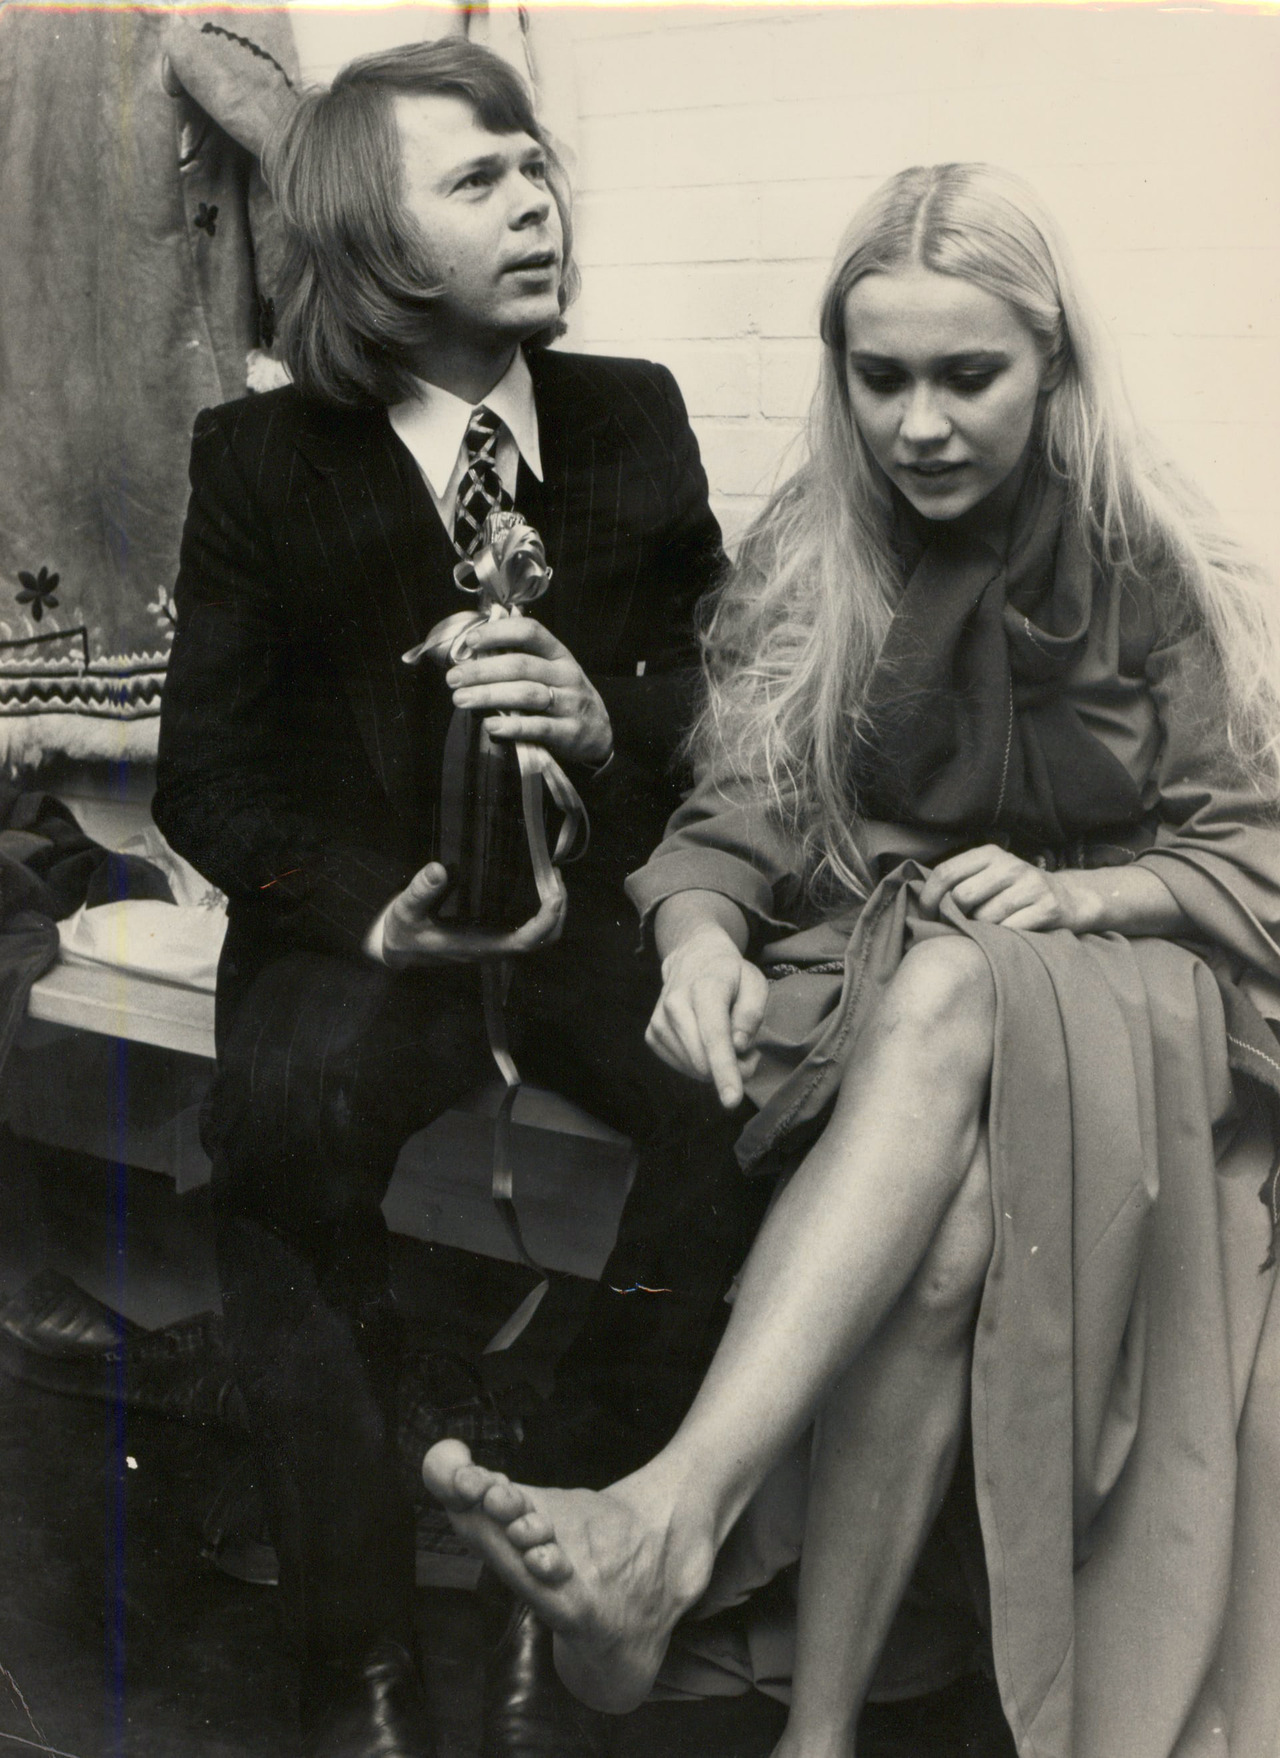 Dreamin — Agnetha Fältskog And Björn Ulvaeus Of Abba 1972